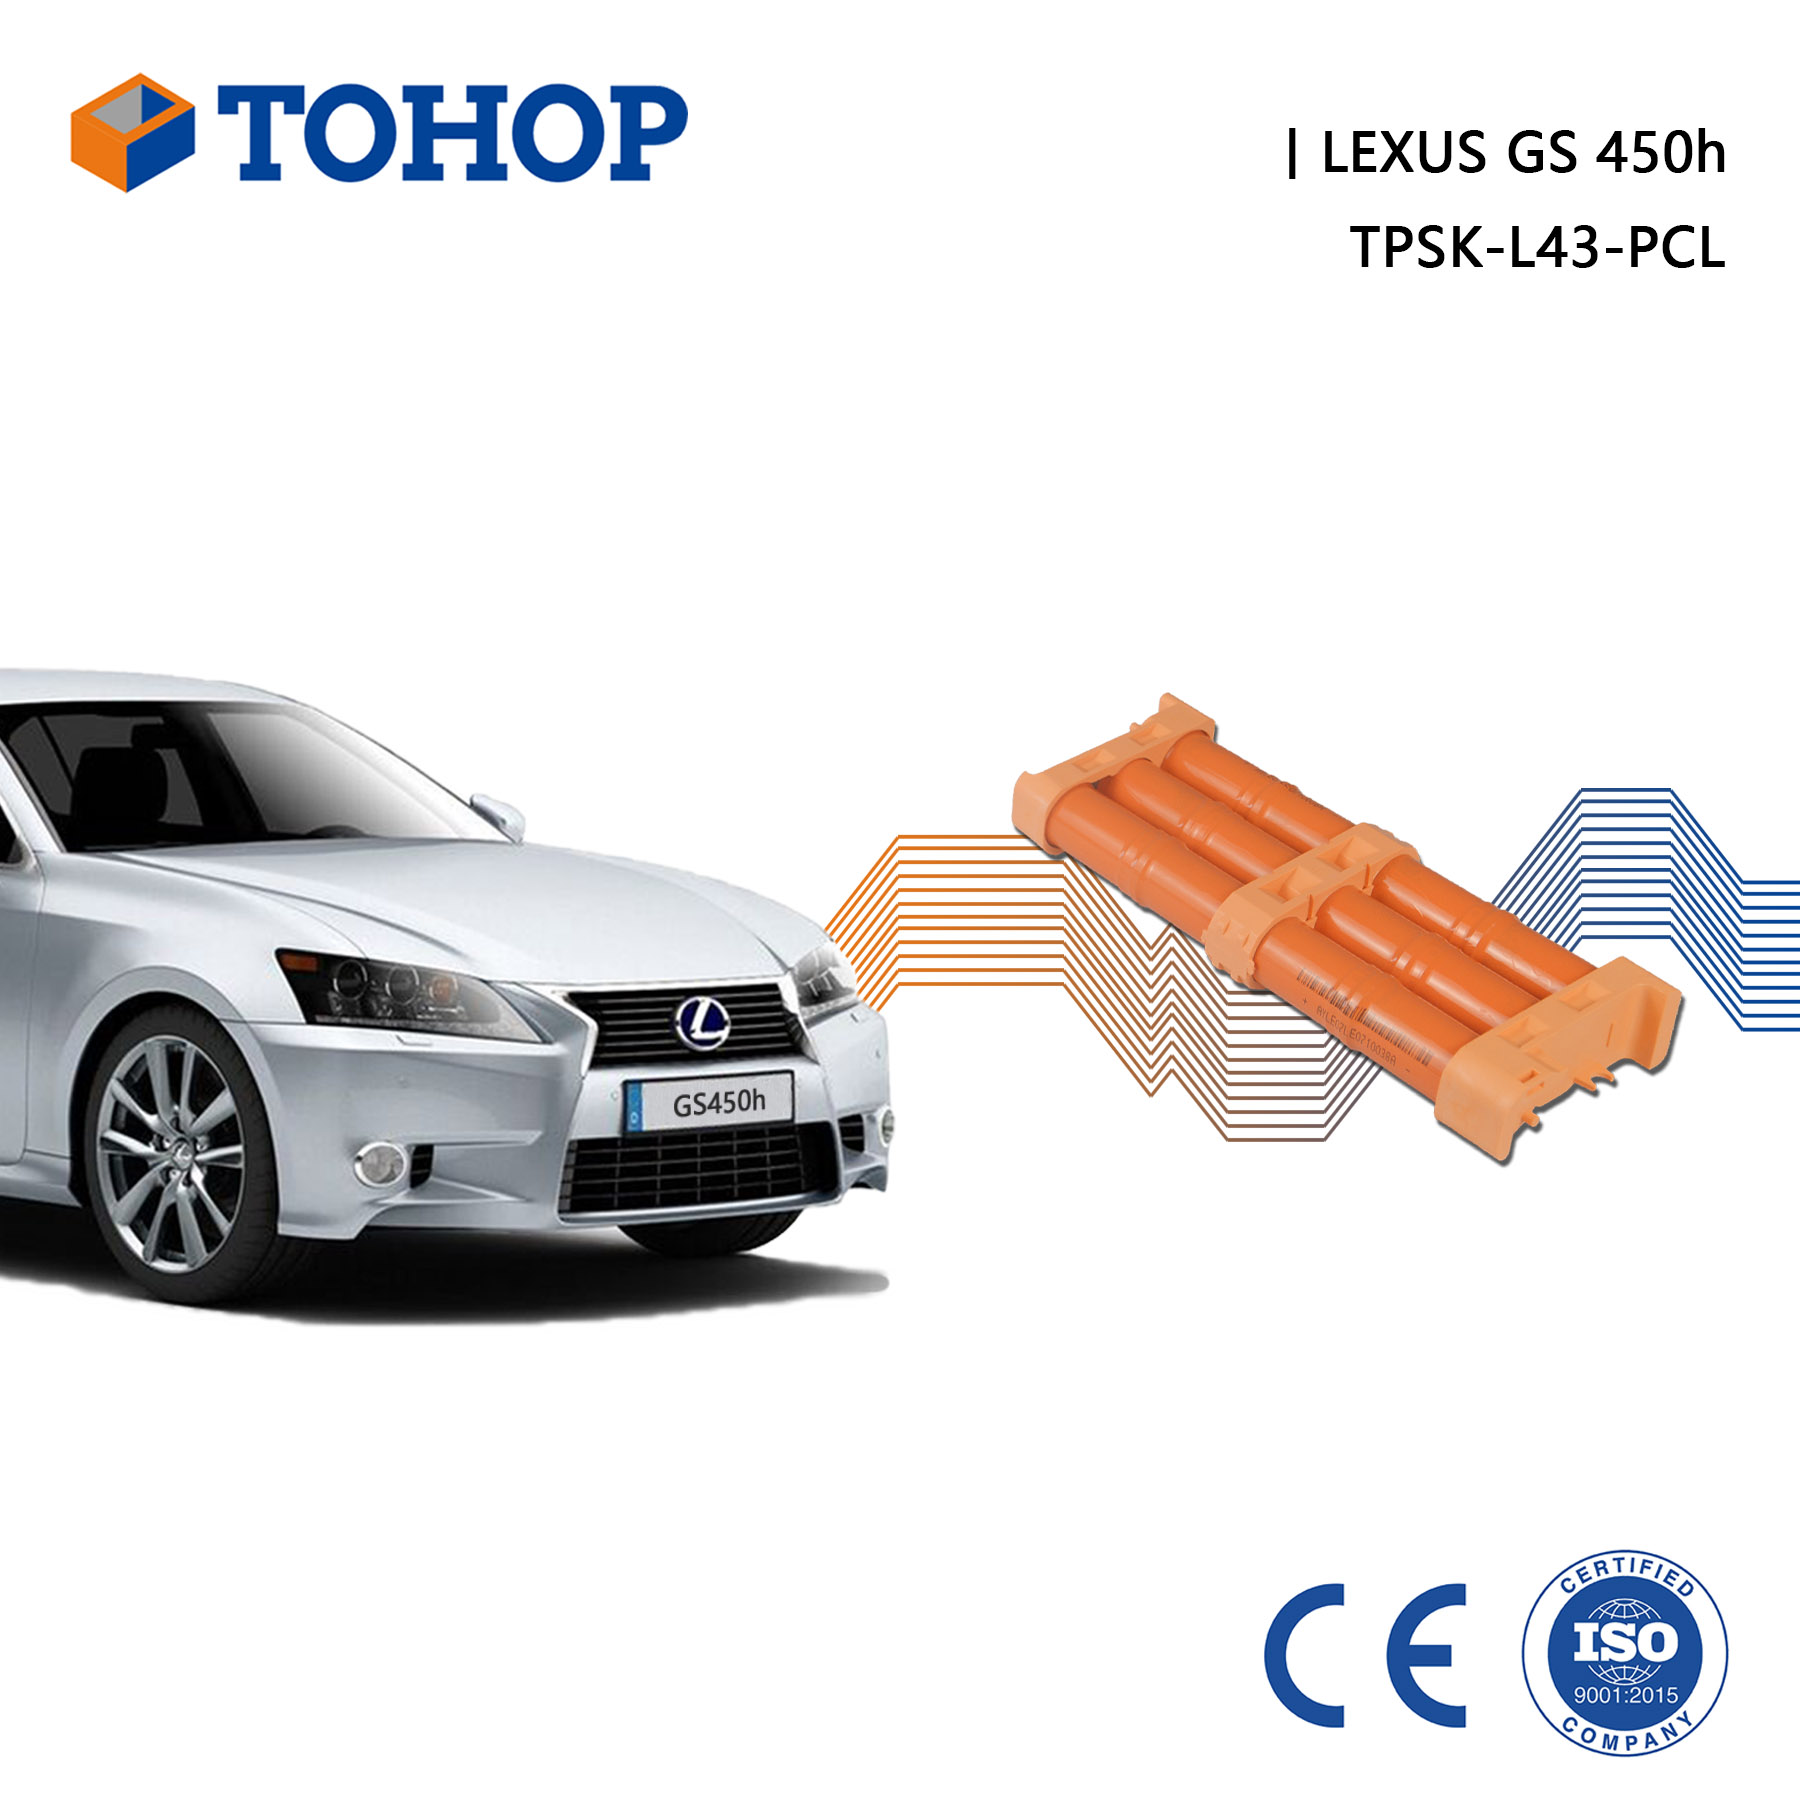 Thrid Gen. S190 Brand New 14.4V 6.5Ah GS 450h Hybrid Car Battery Pack for Lexus